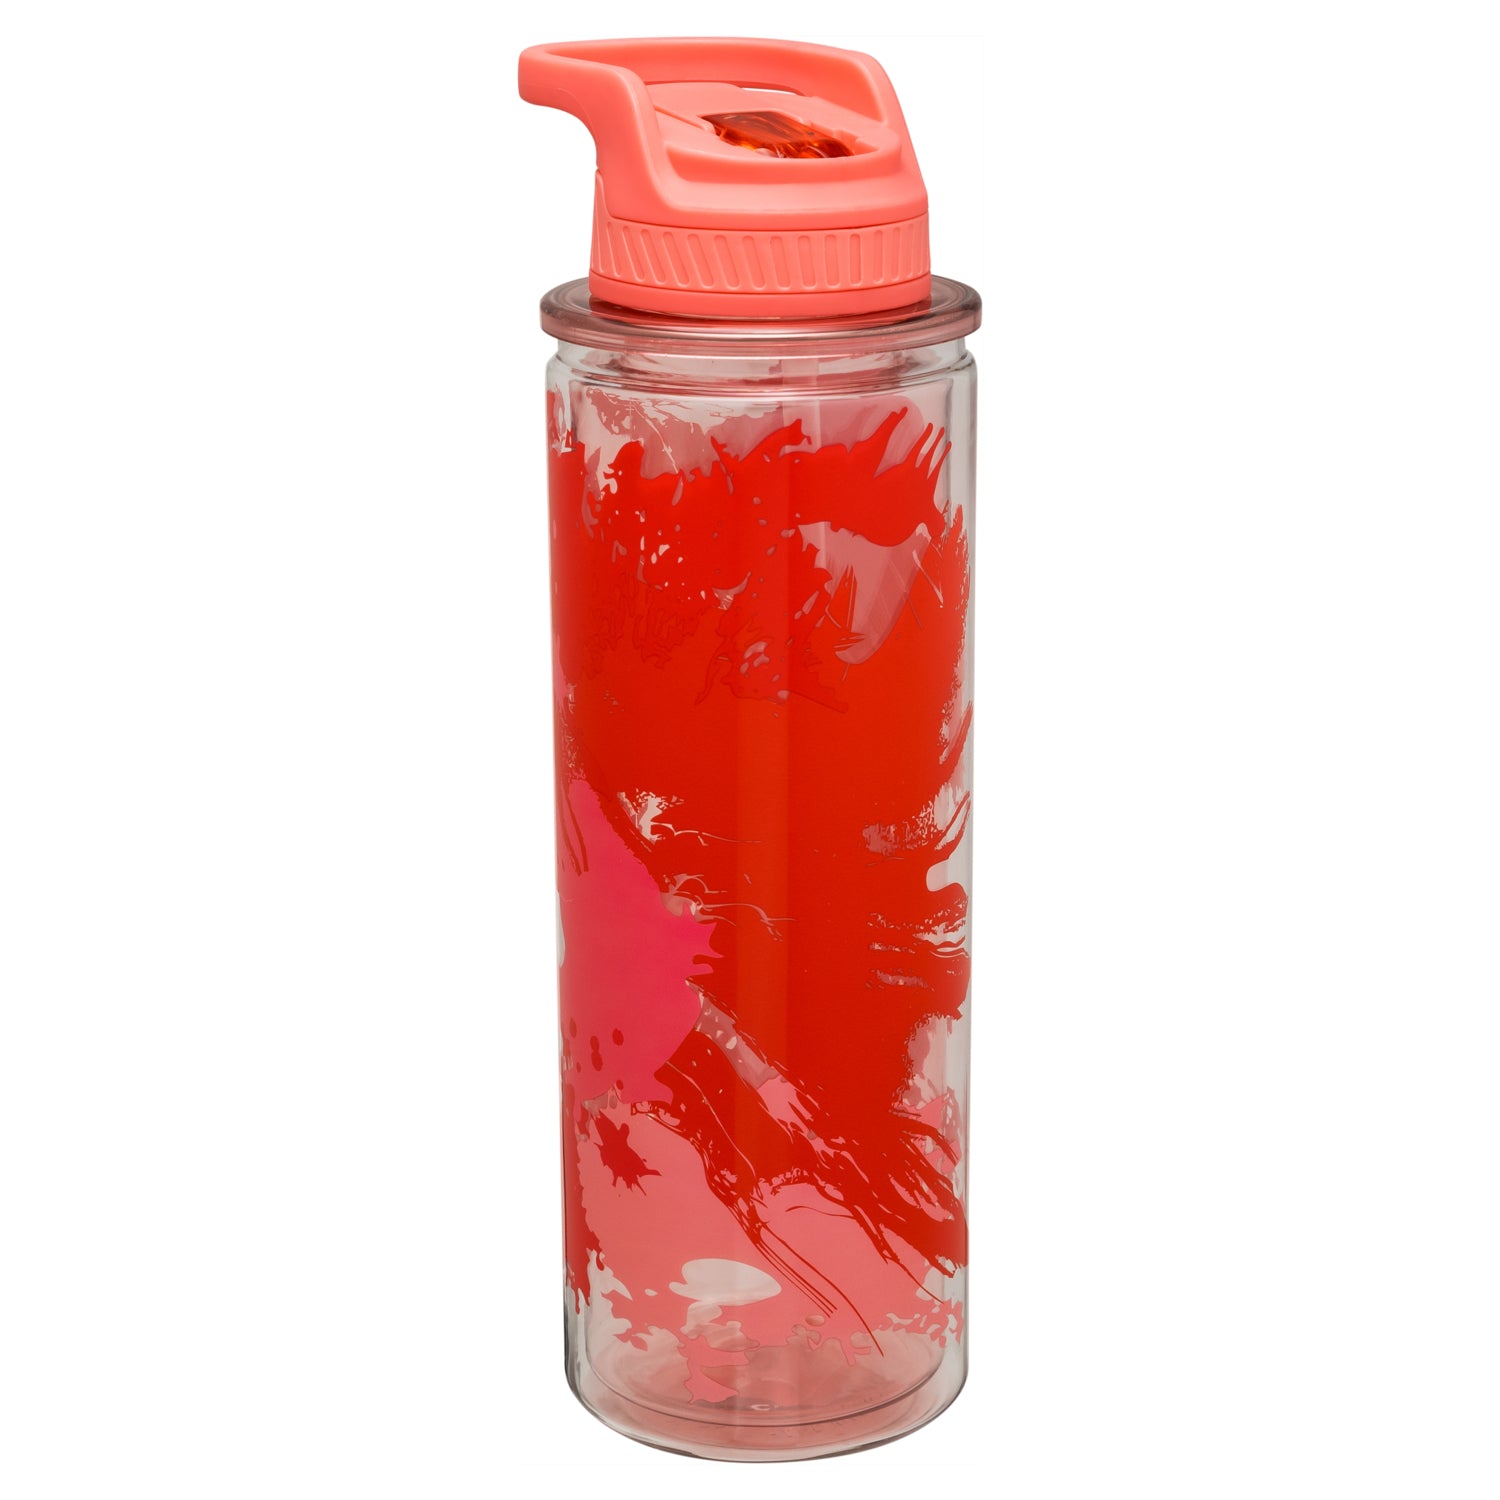 Sip Happy Water Bottle – Sea Things Ventura